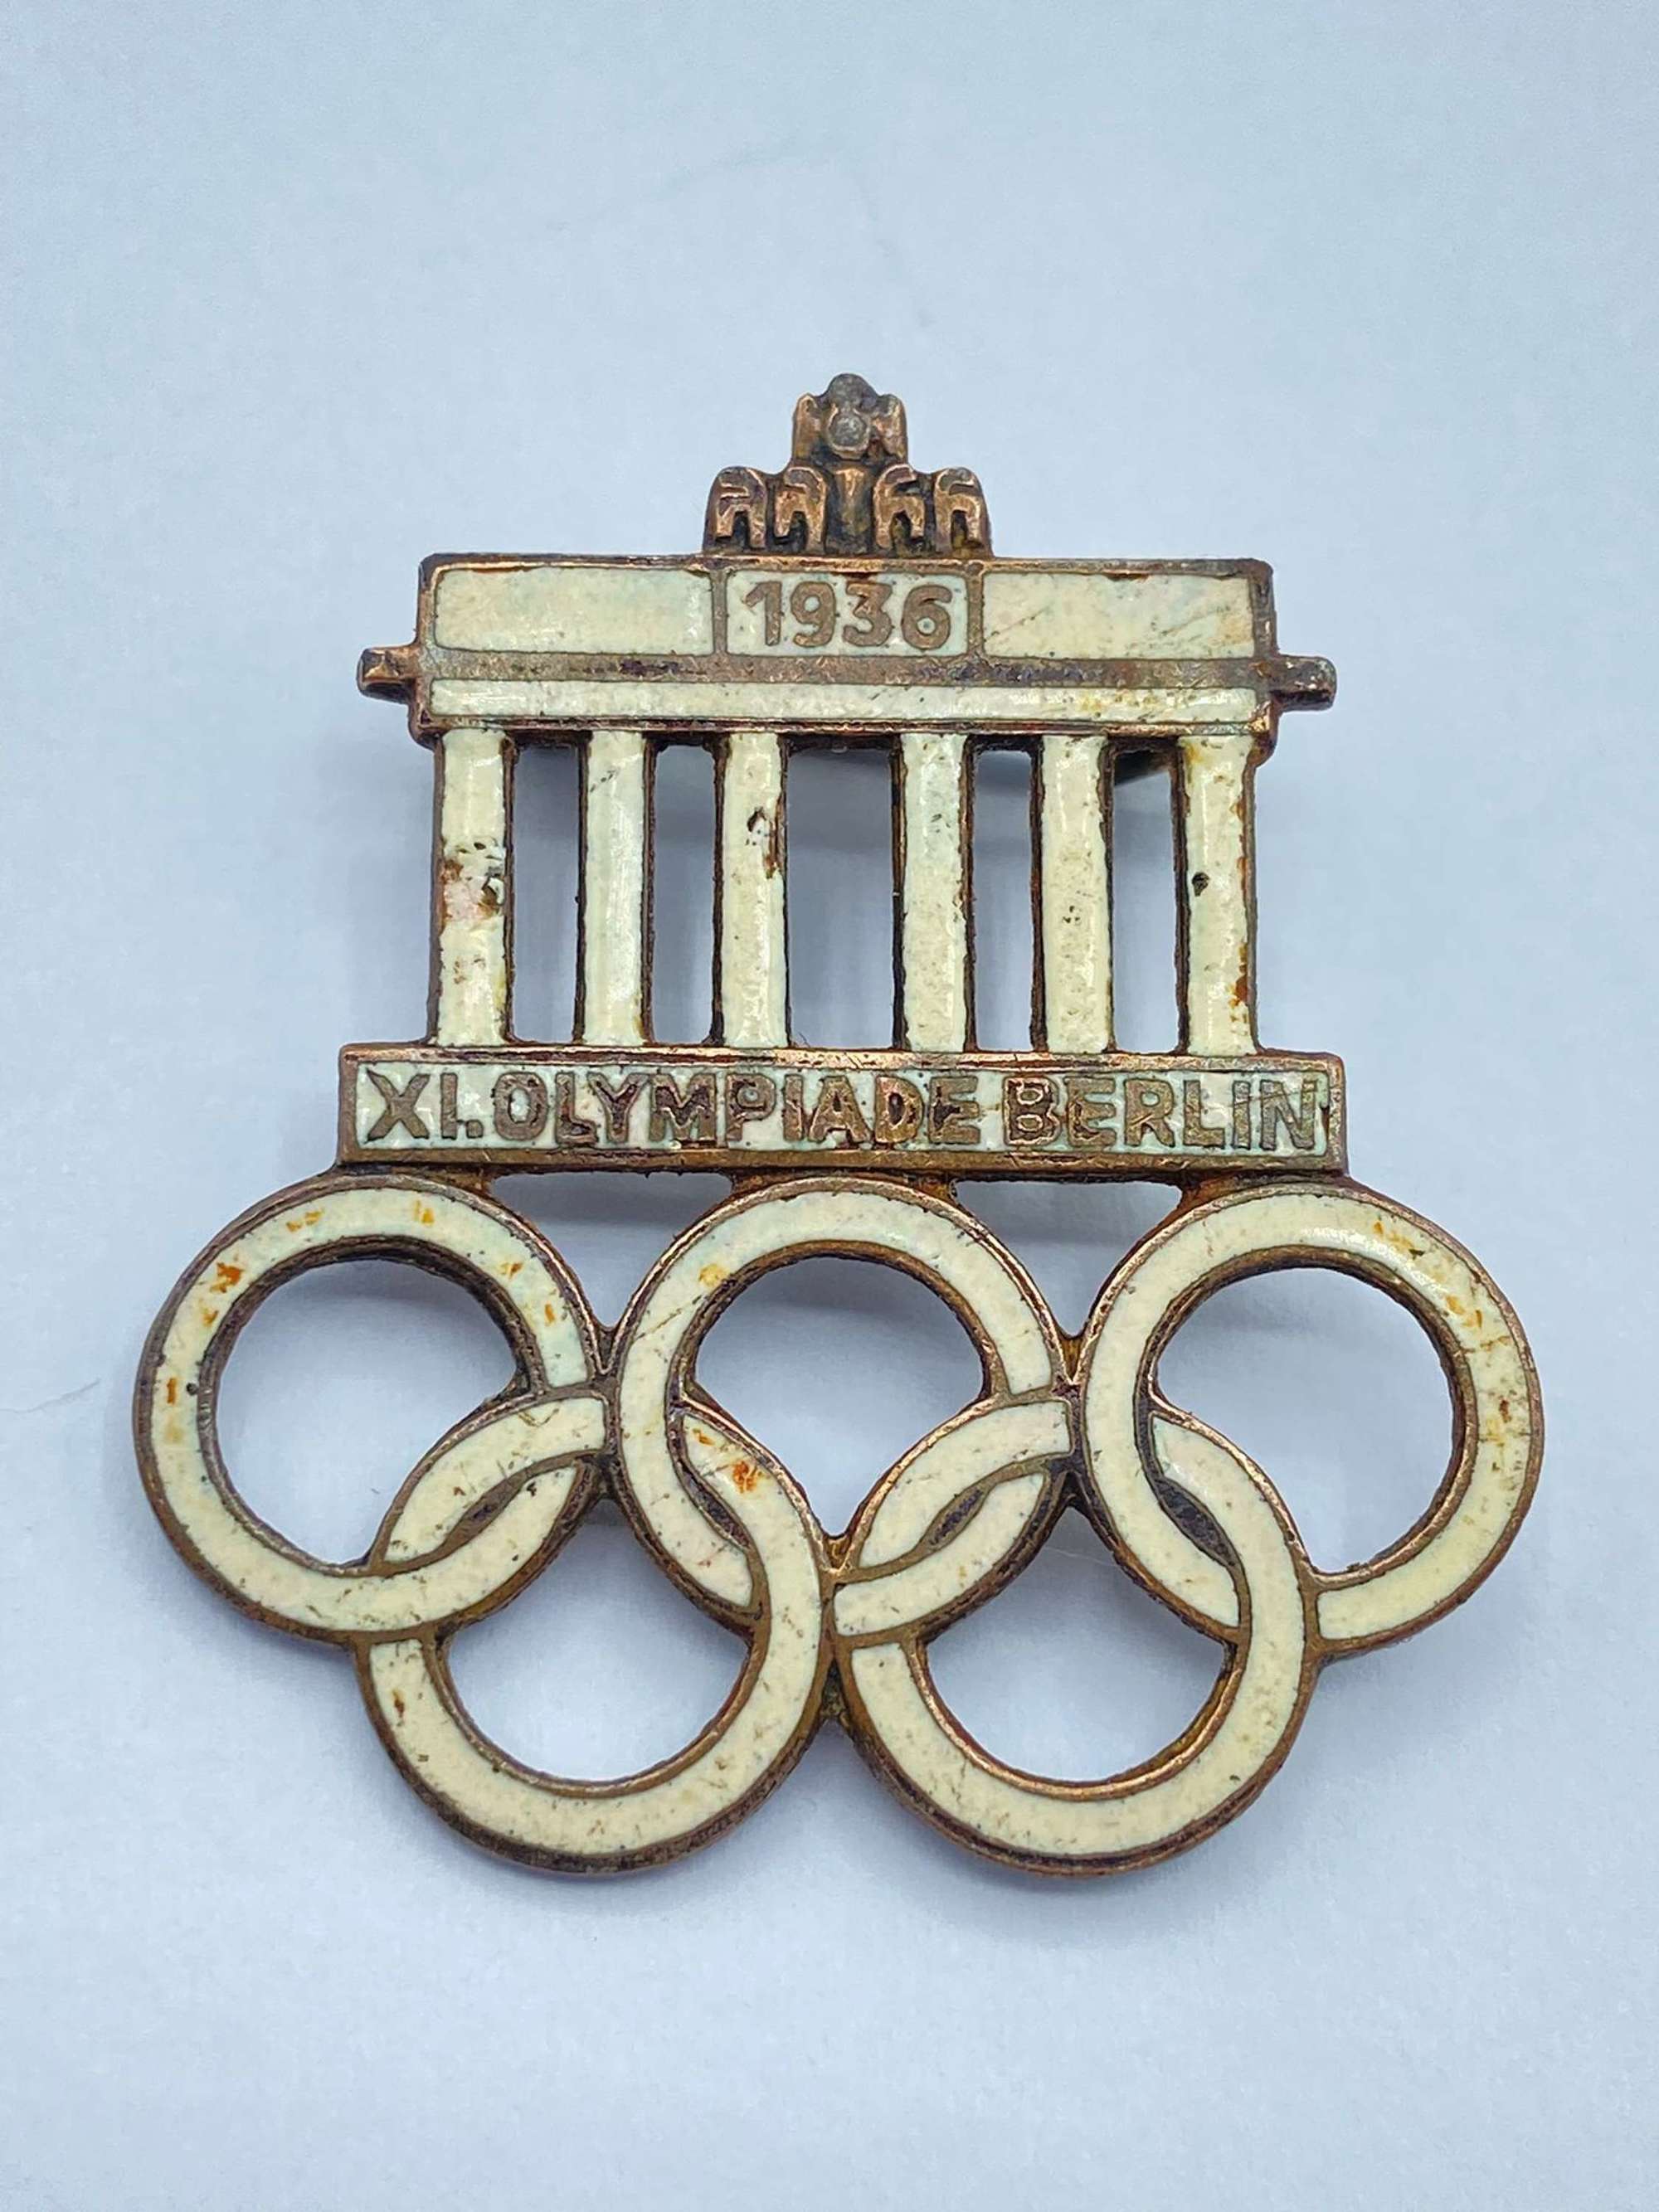 Pre WW2 German 1936 Olympics Berlin Enamel Badge Maker Marked DH